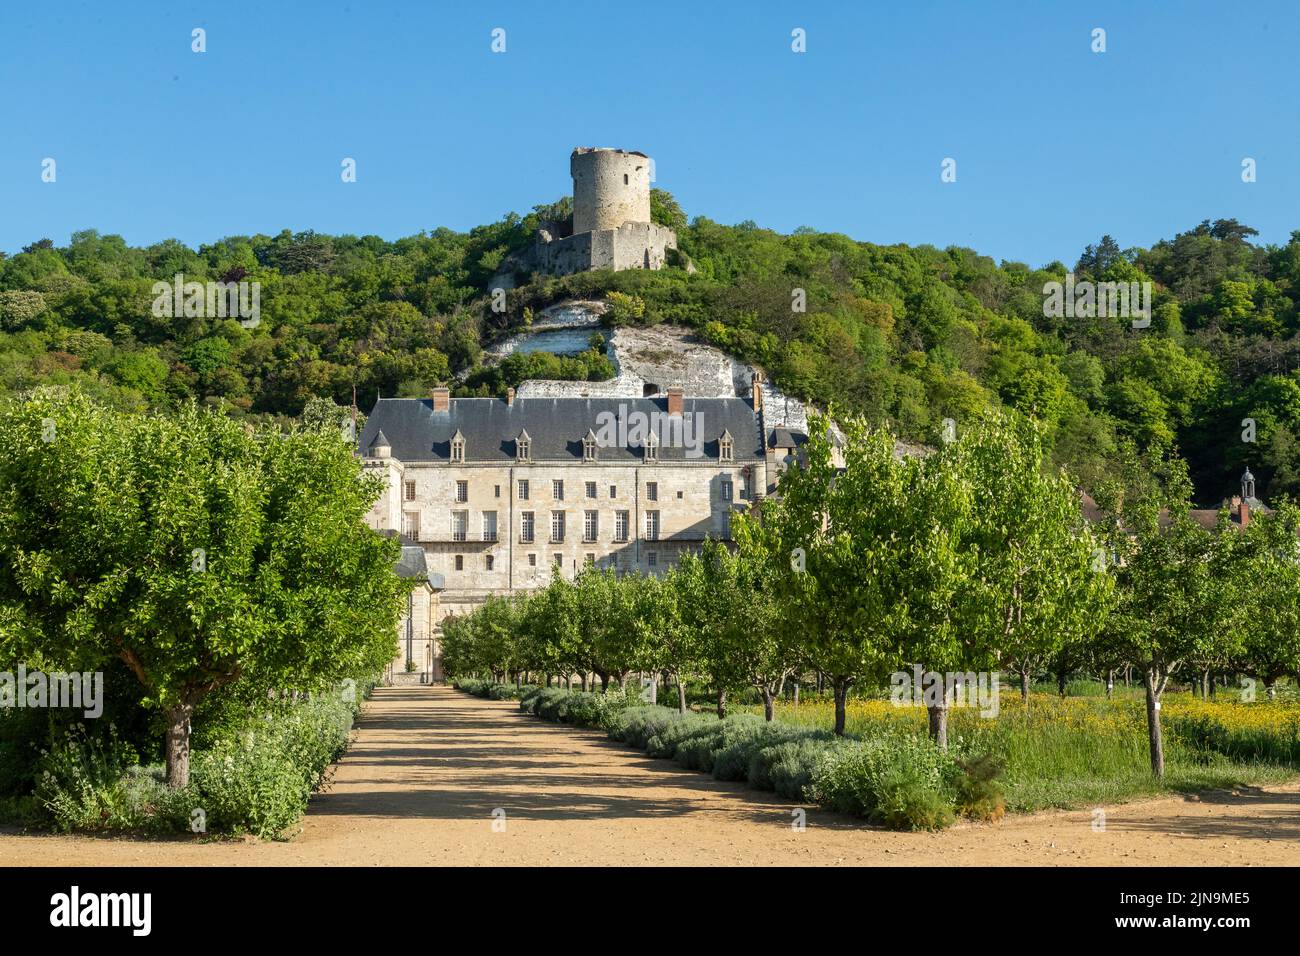 Frankreich, Val d'Oise, Vexin Francais Natural Regional Park, La Roche Guyon, bezeichnet als Les Plus Beaux Villages de France (die schönsten Dörfer von F Stockfoto